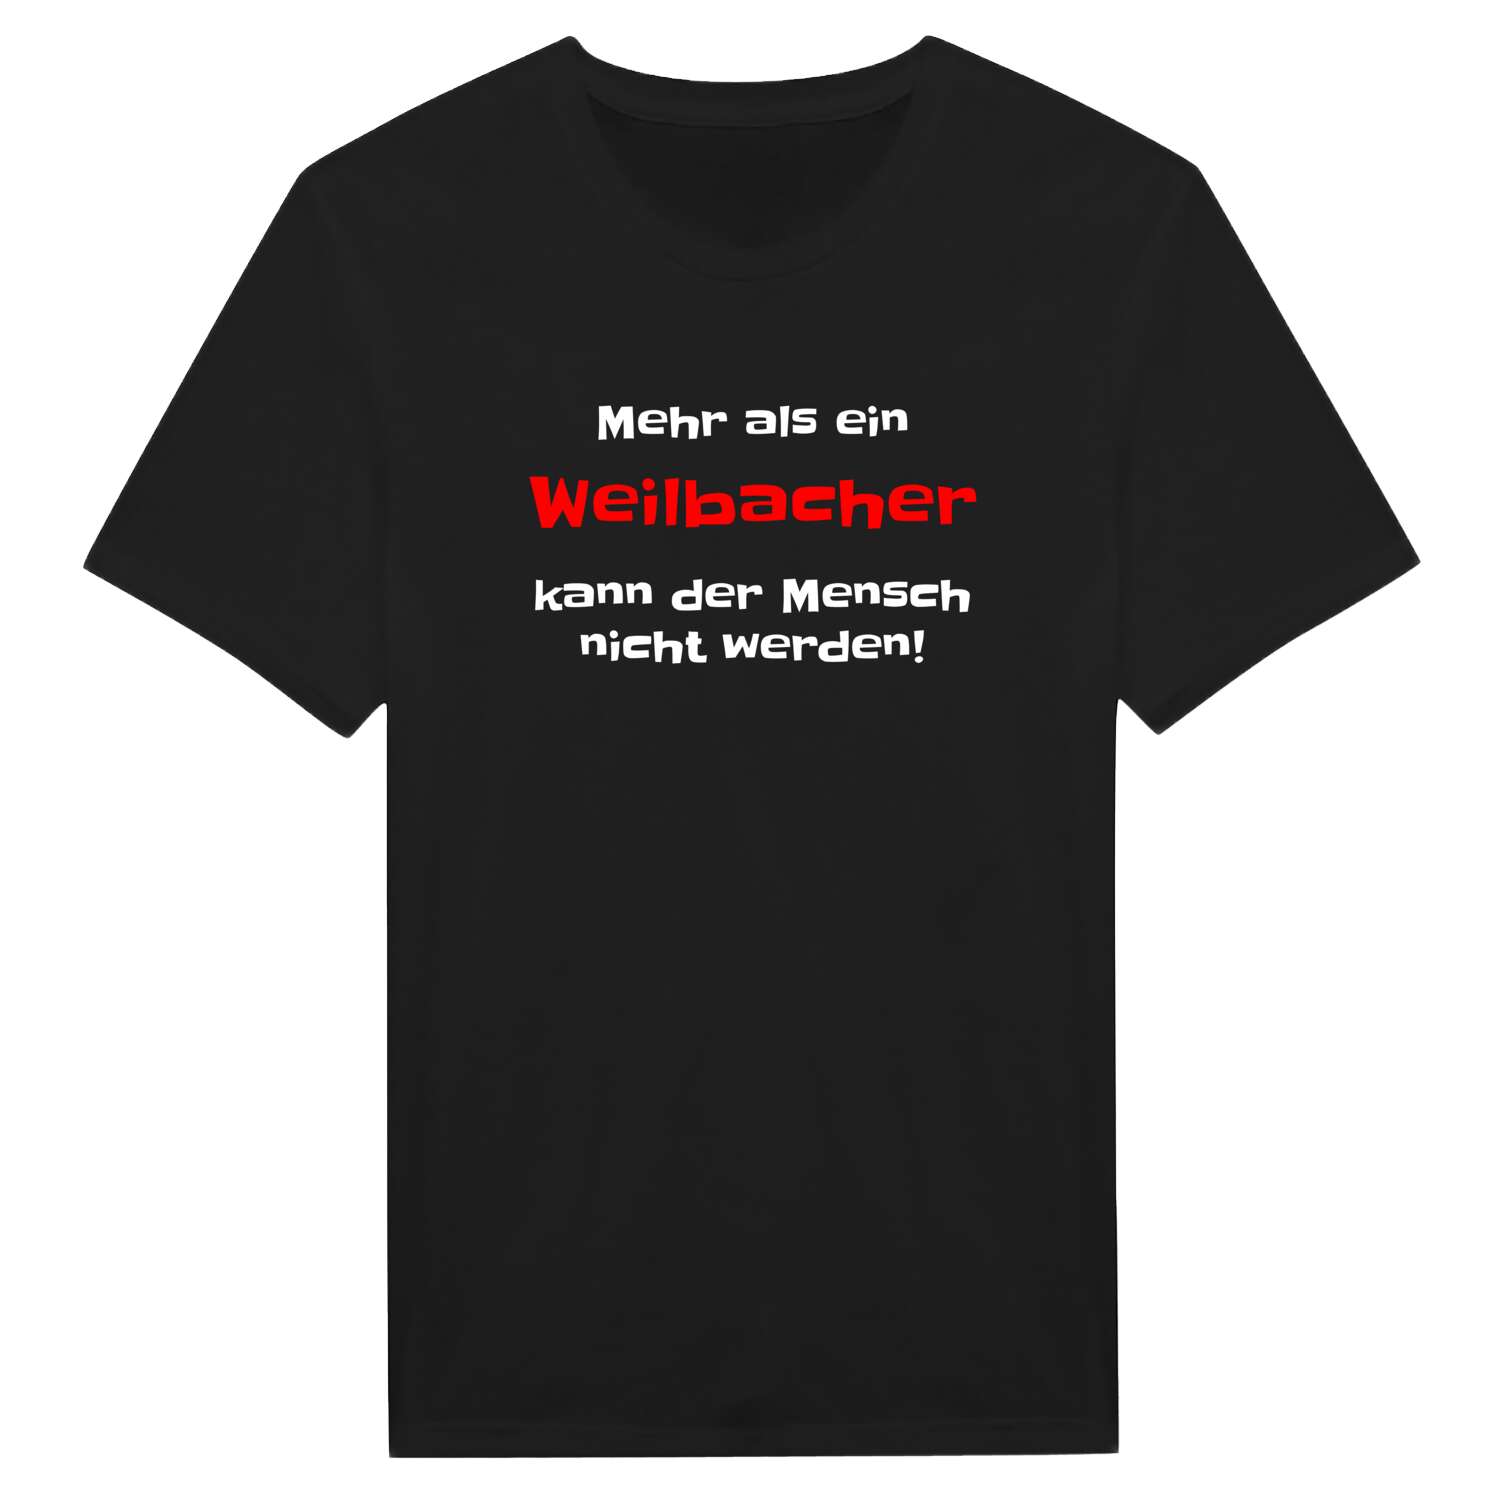 Weilbach T-Shirt »Mehr als ein«